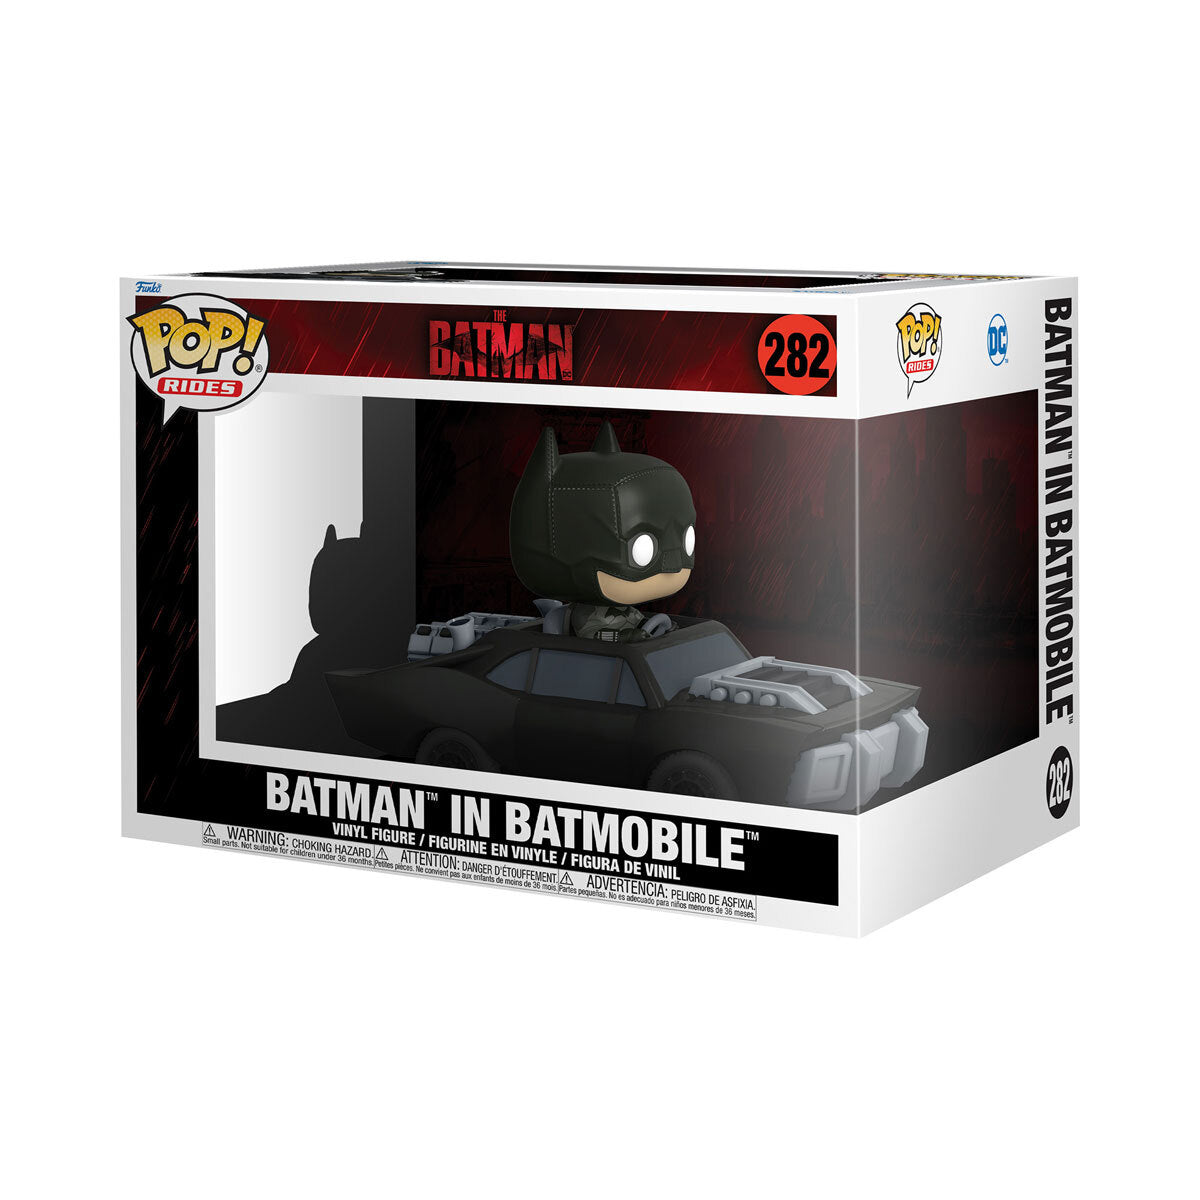 *Reduced to clear* BATMAN IN BATMOBILE - THE BATMAN - 282